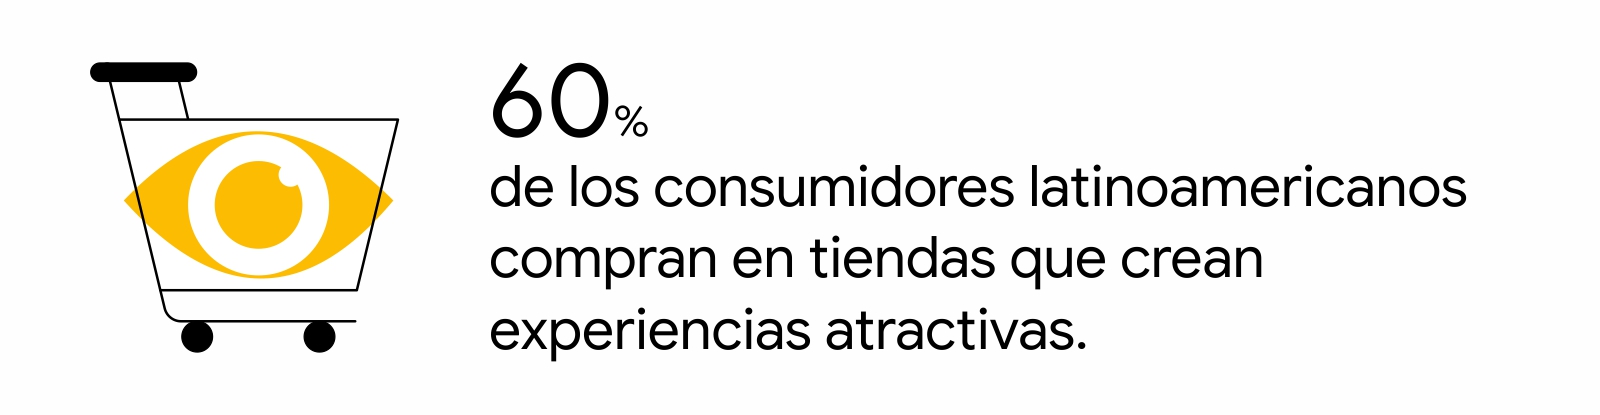 Un carrito de compras con un ojo amarillo encima. A la derecha, la leyenda: 60% de los consumidores latinoamericanos compran en tiendas que crean experiencias atractivas.